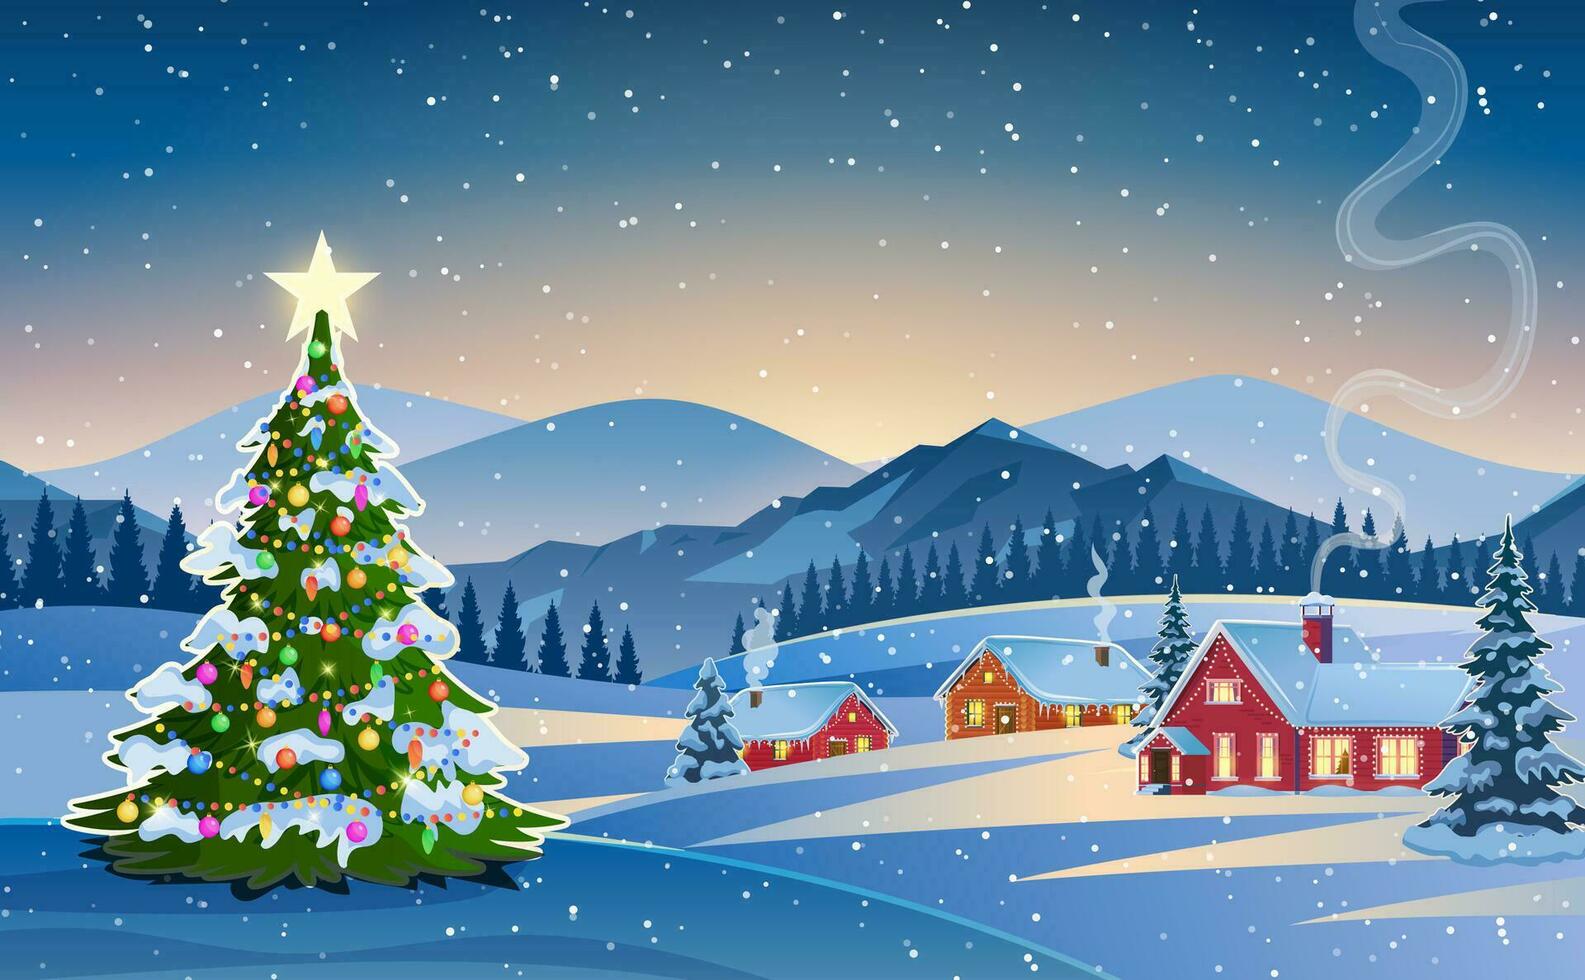 Winter Schnee Landschaft und Häuser mit Weihnachten Baum. Konzept zum Gruß oder Post- Karte. Winter Schnee Landschaft und Häuser mit Schneeflocken fallen von Himmel. Vektor Illustration.